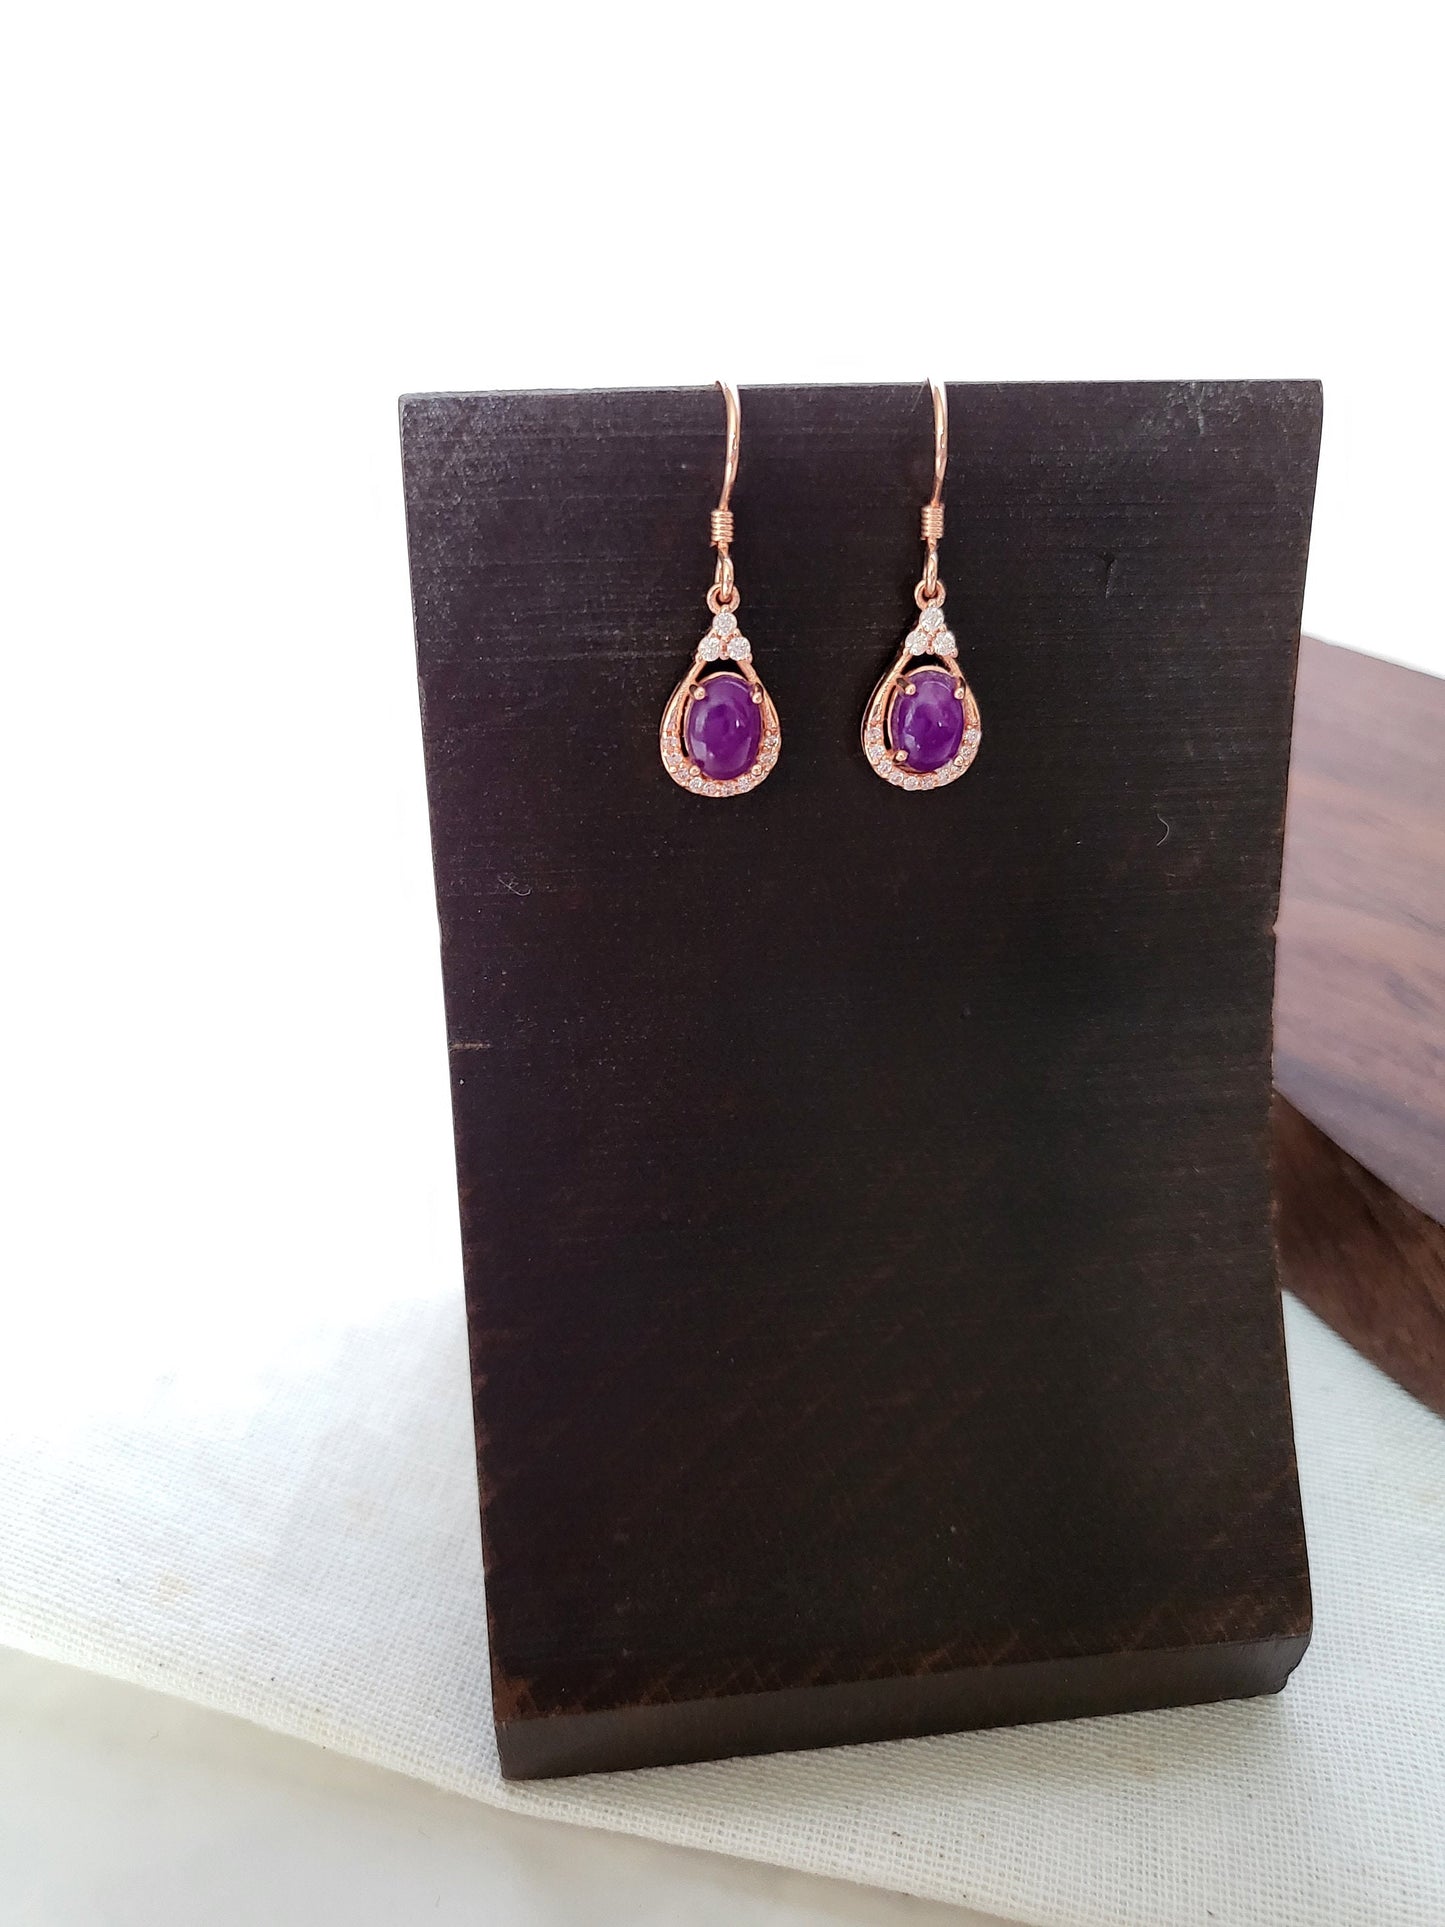 Natural Sugilite Earrings Royal Purple Gel-like Gem Rose Gold Dangle Earrings teardrop shape with Crystal